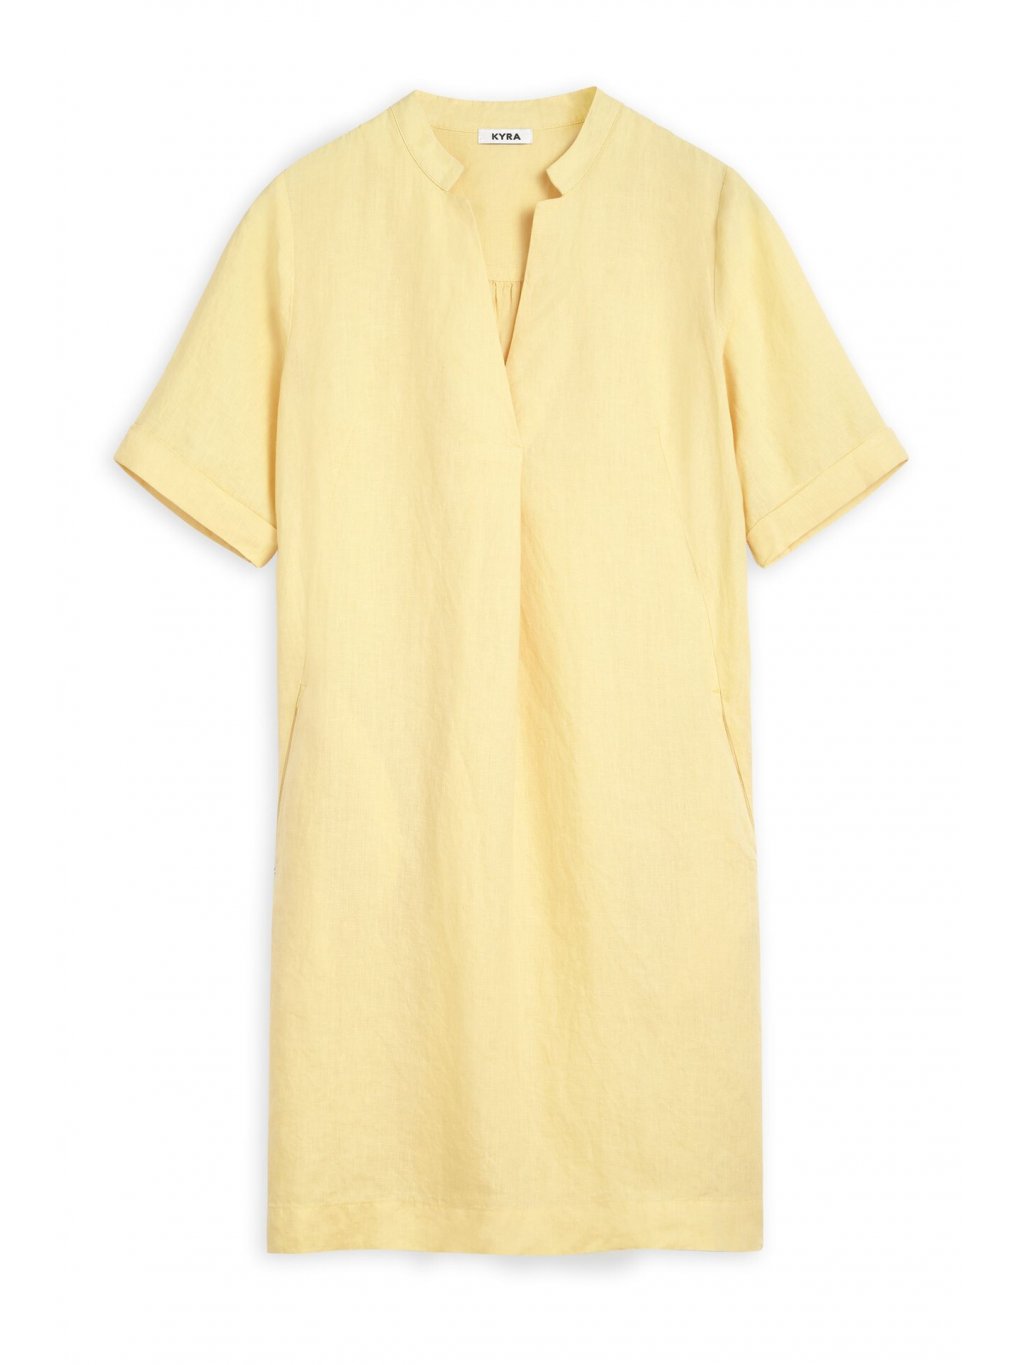 Šaty Maddie žluté lněné minimalismus